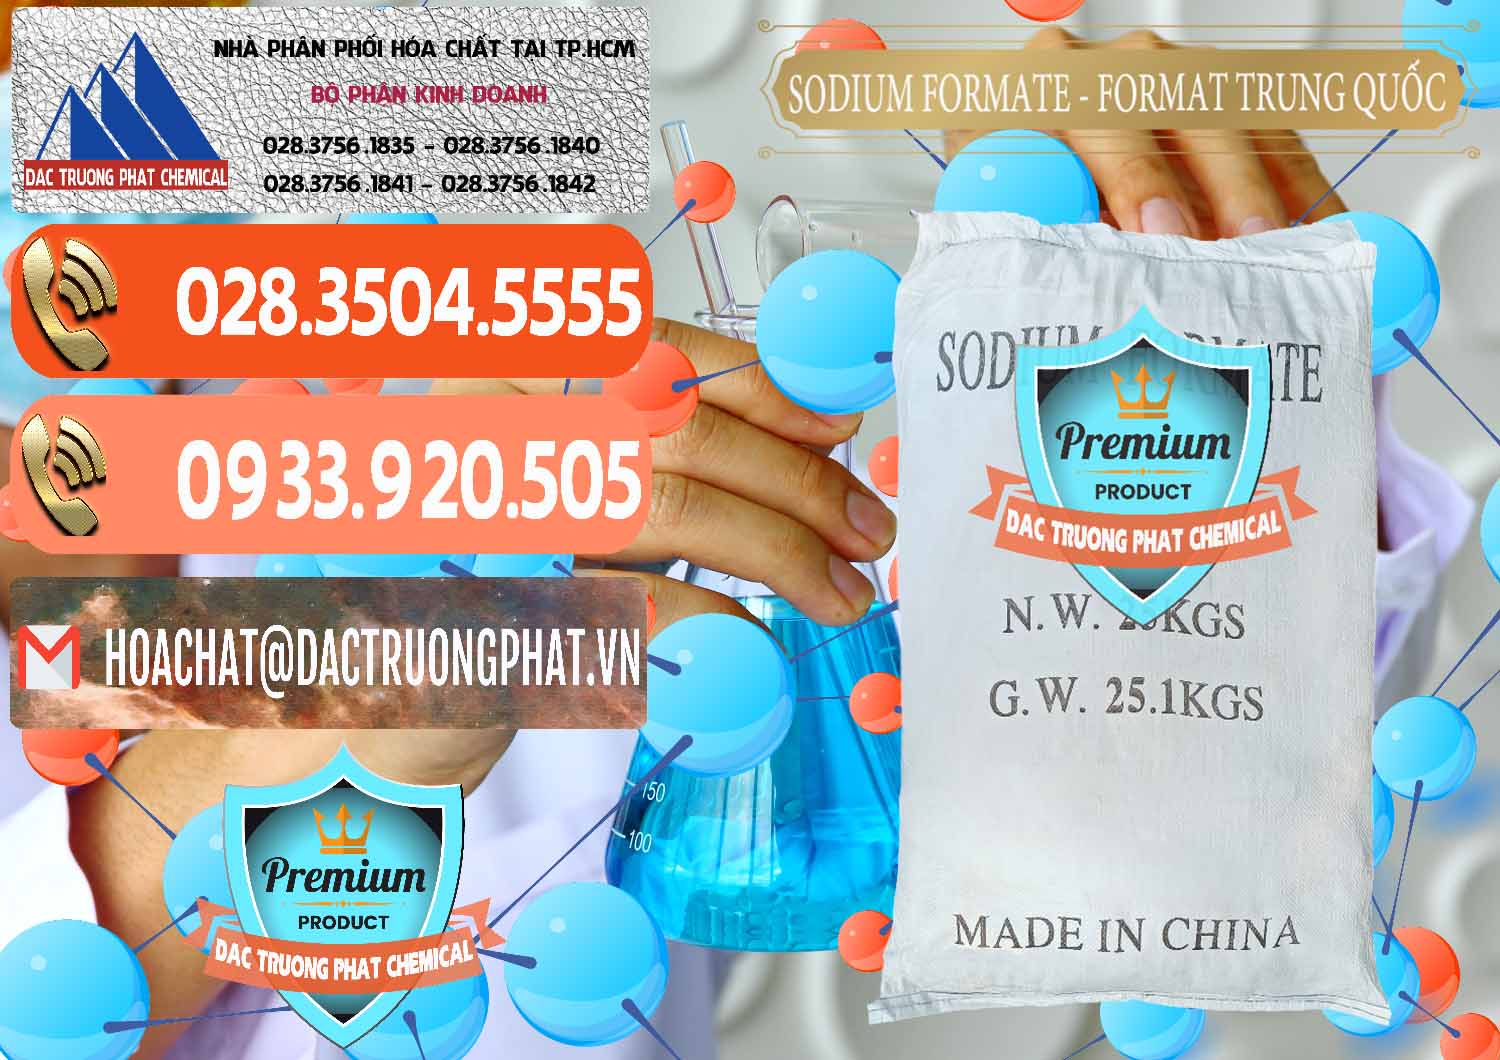 Kinh doanh và bán Sodium Formate - Natri Format Trung Quốc China - 0142 - Nơi chuyên phân phối & cung ứng hóa chất tại TP.HCM - hoachatmientay.com